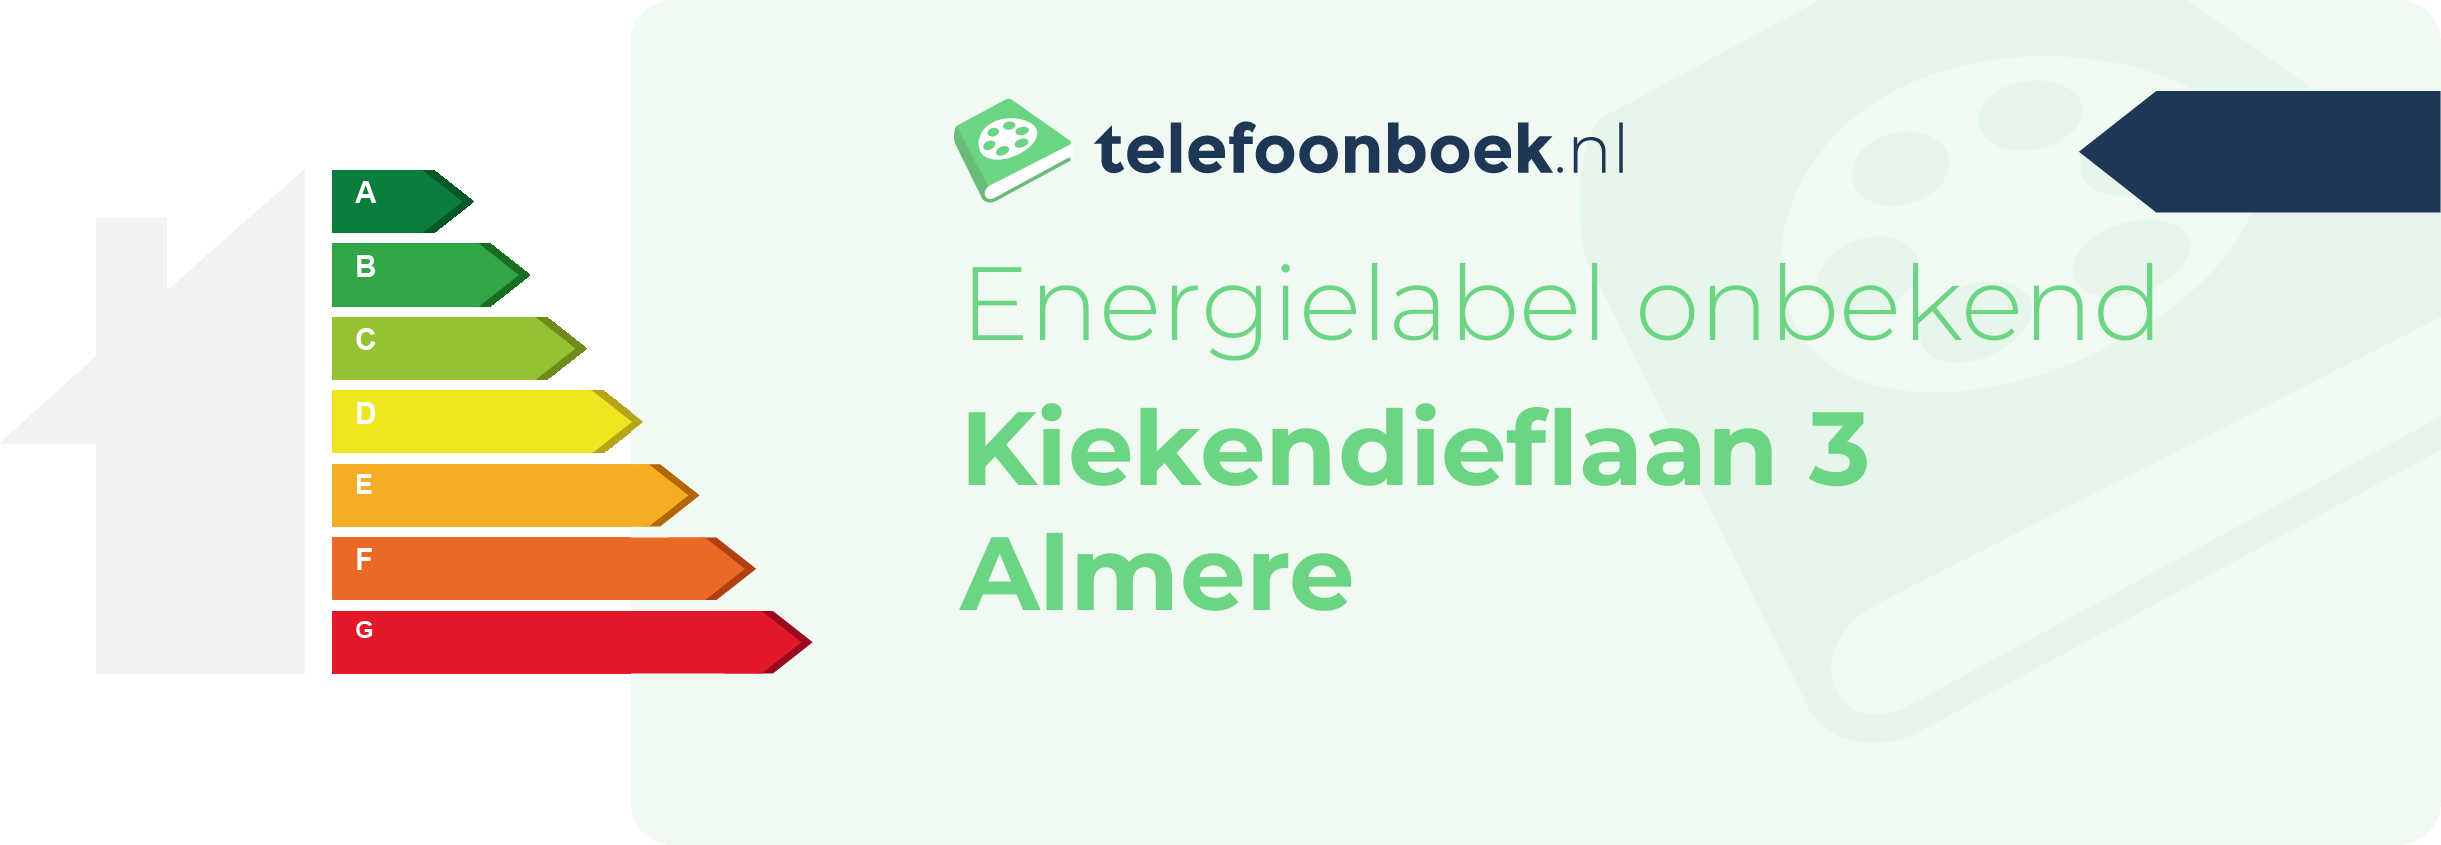 Energielabel Kiekendieflaan 3 Almere